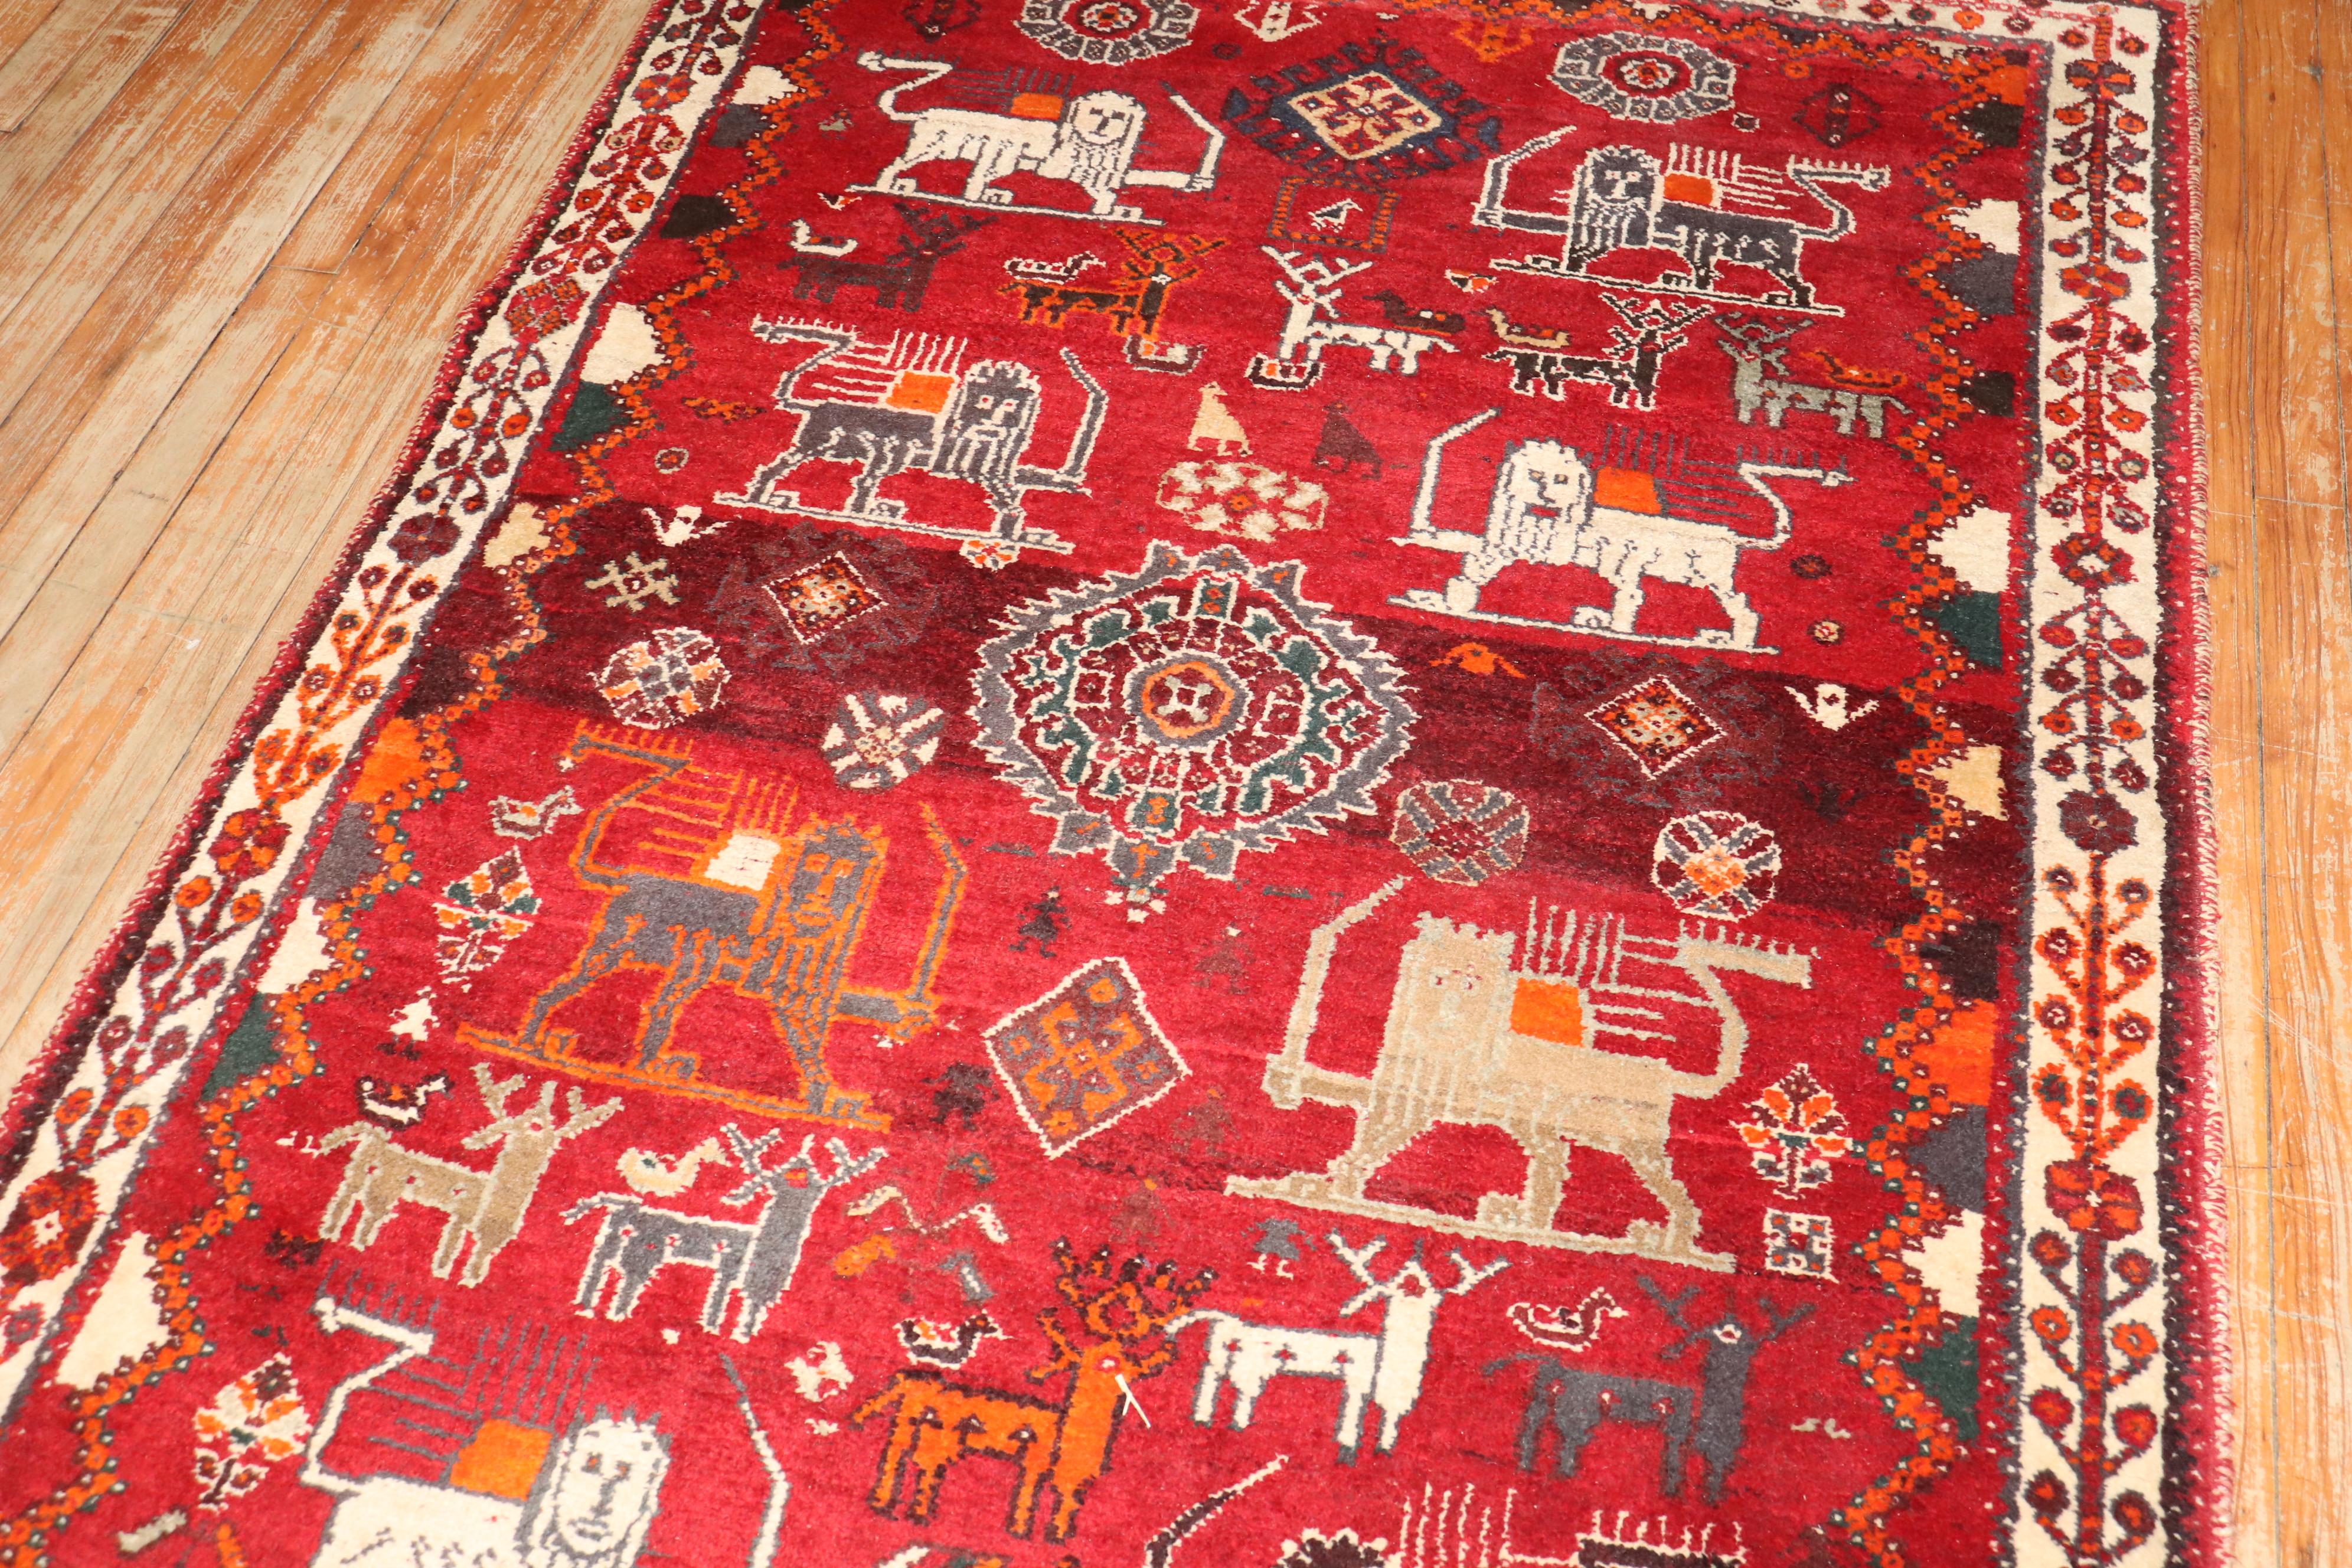 Einzigartiger roter Gabbeh-Teppich mit persischem Tiermotiv aus dem späten 20.

Maße: 4' x 6'3''.